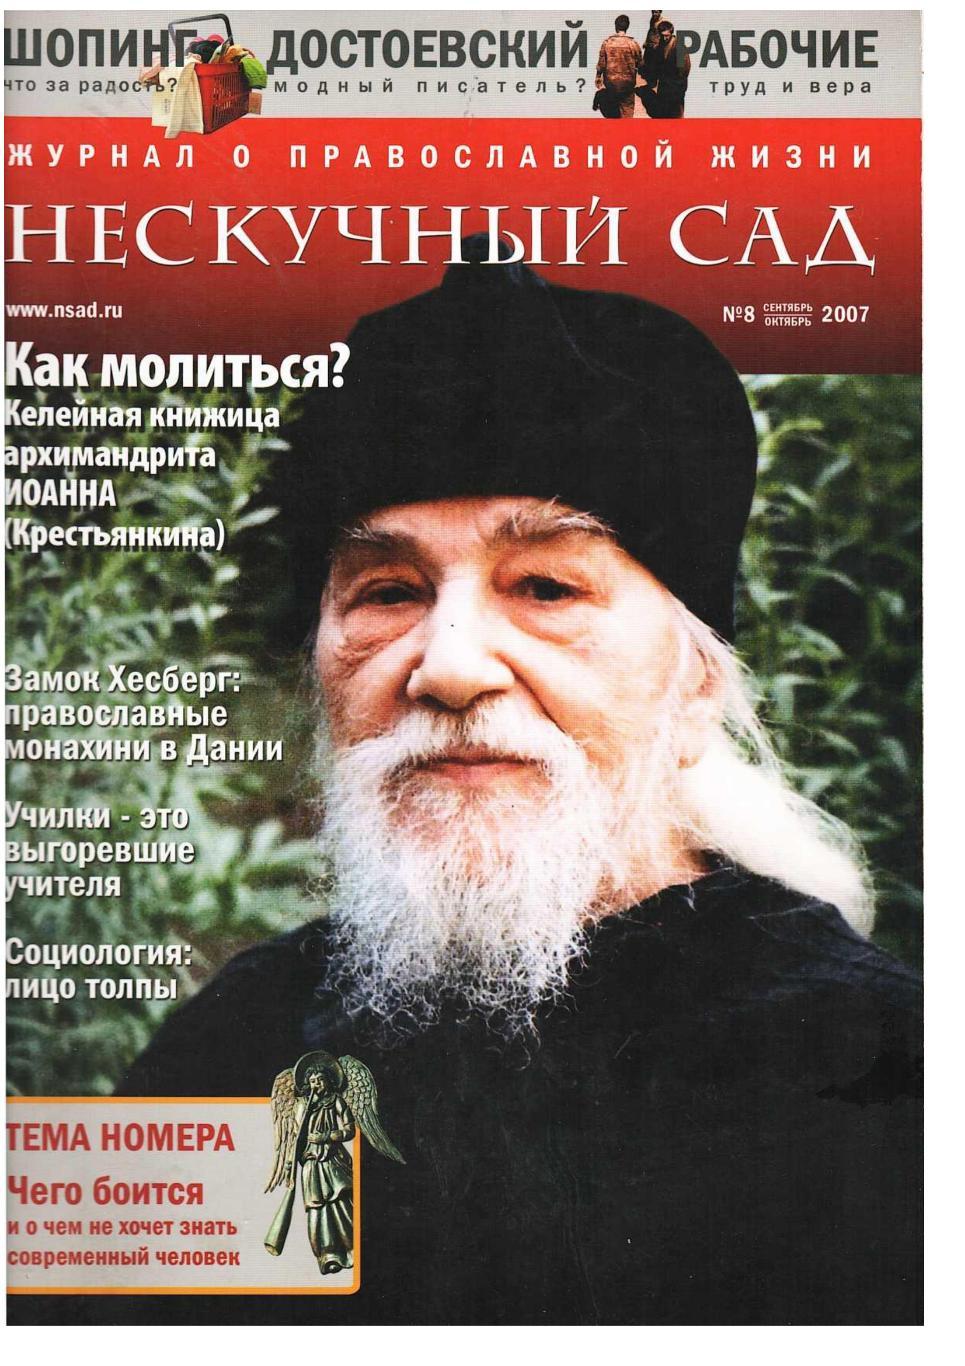 Нескучный сад. Журнал православной жизни. – 2007, № 9. сентябрь, октябрь.